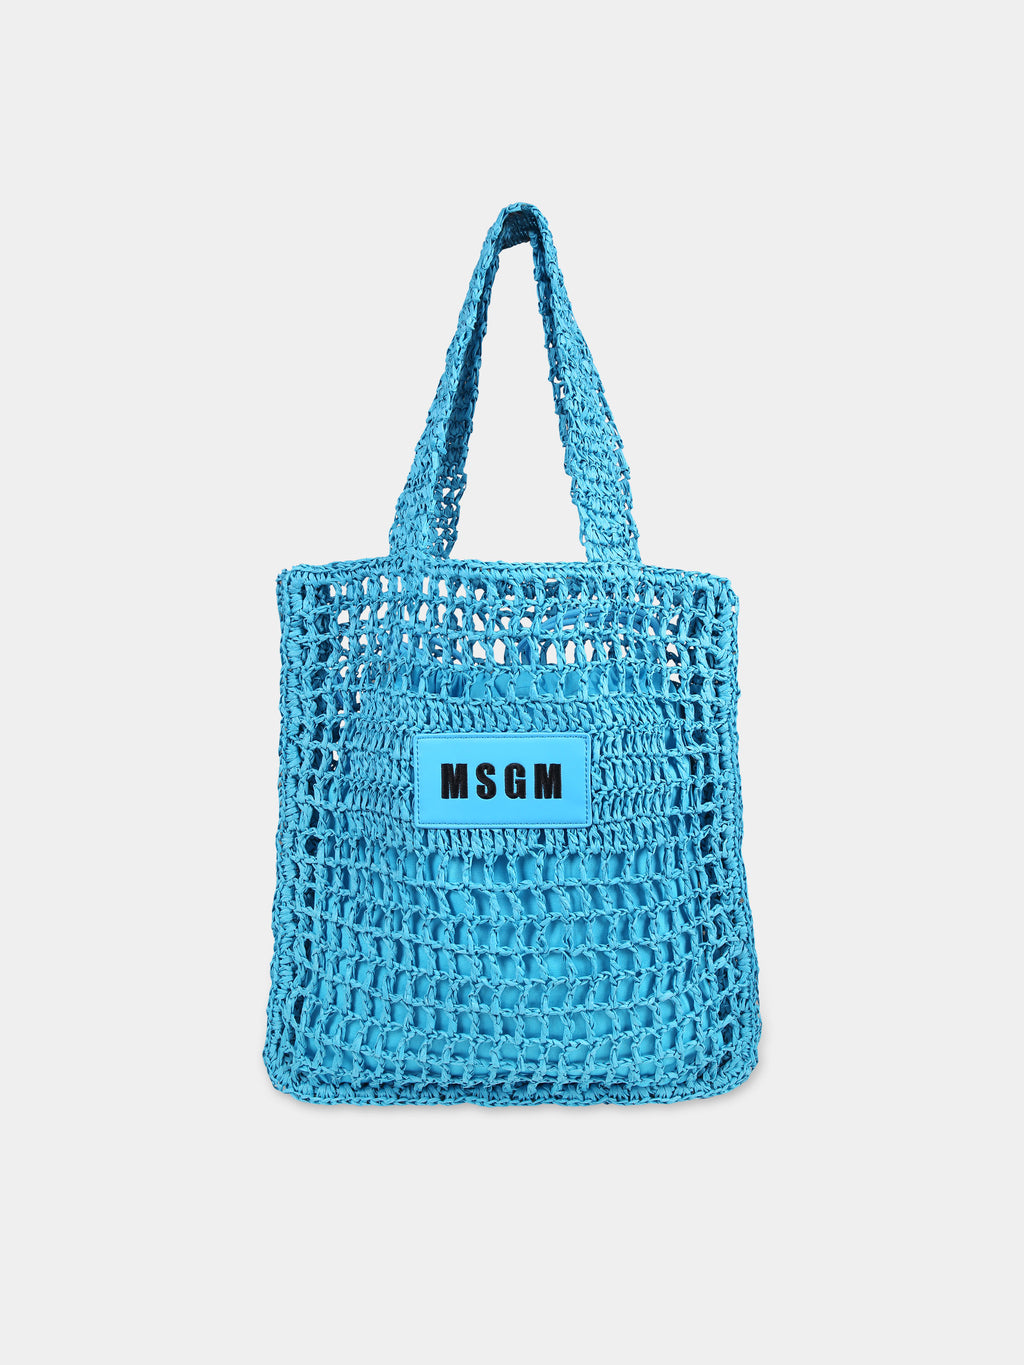 Light blue bag for girl with logo